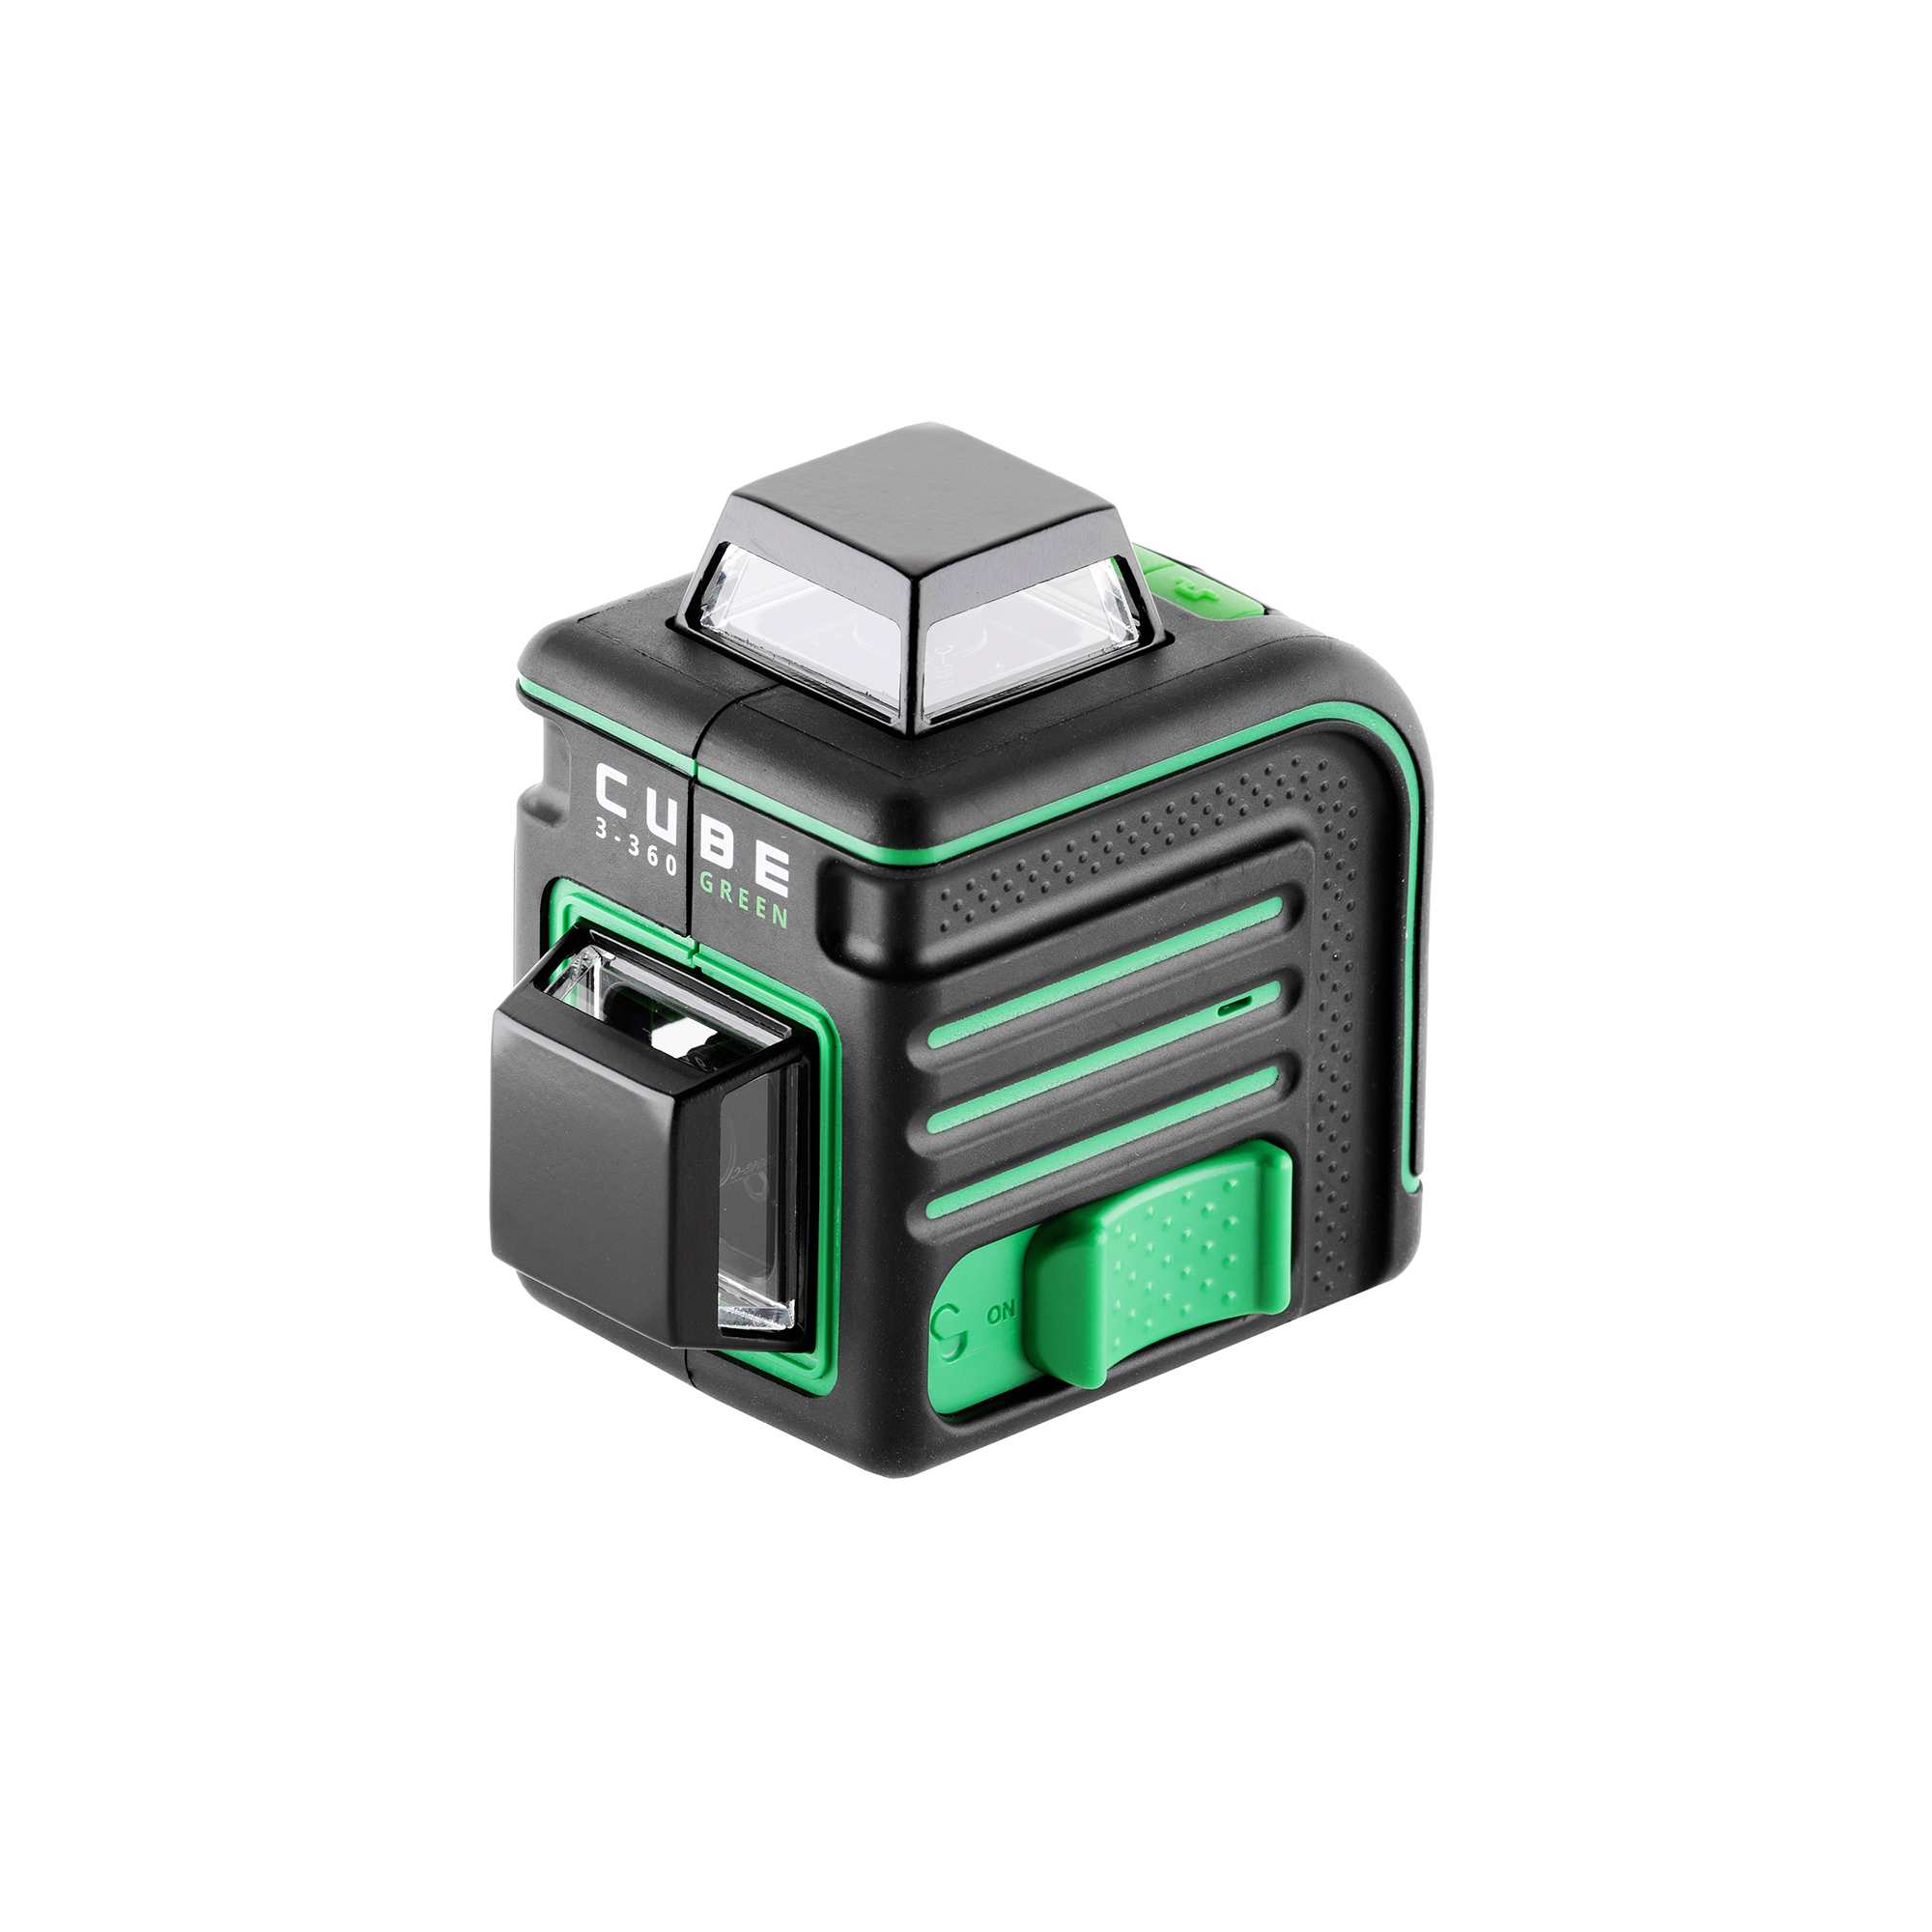 Уровень ada cube 360 green. Лазерный уровень ada Cube 3-360 Green. Лазерный уровень ada Cube 3-360 Green Basic Edition а00560. Лазерный уровень ada Cube 3-360 Green Home Edition а00566. Ada Cube 3-360 Green Ultimate Edition.